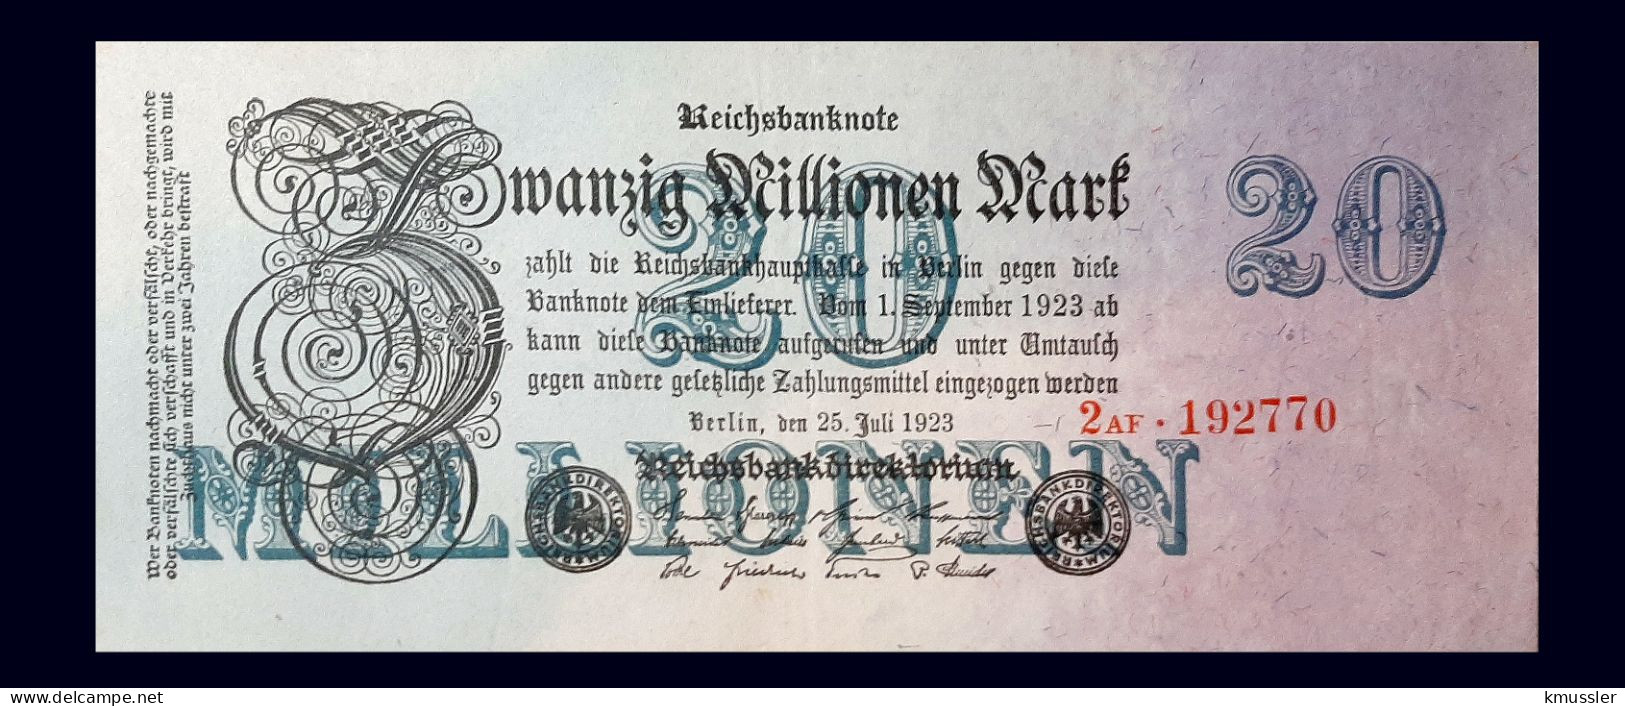 # # # Banknote Deutsches Reich (Germany) 20.000 Mark 1923 # # # - 20 Mio. Mark